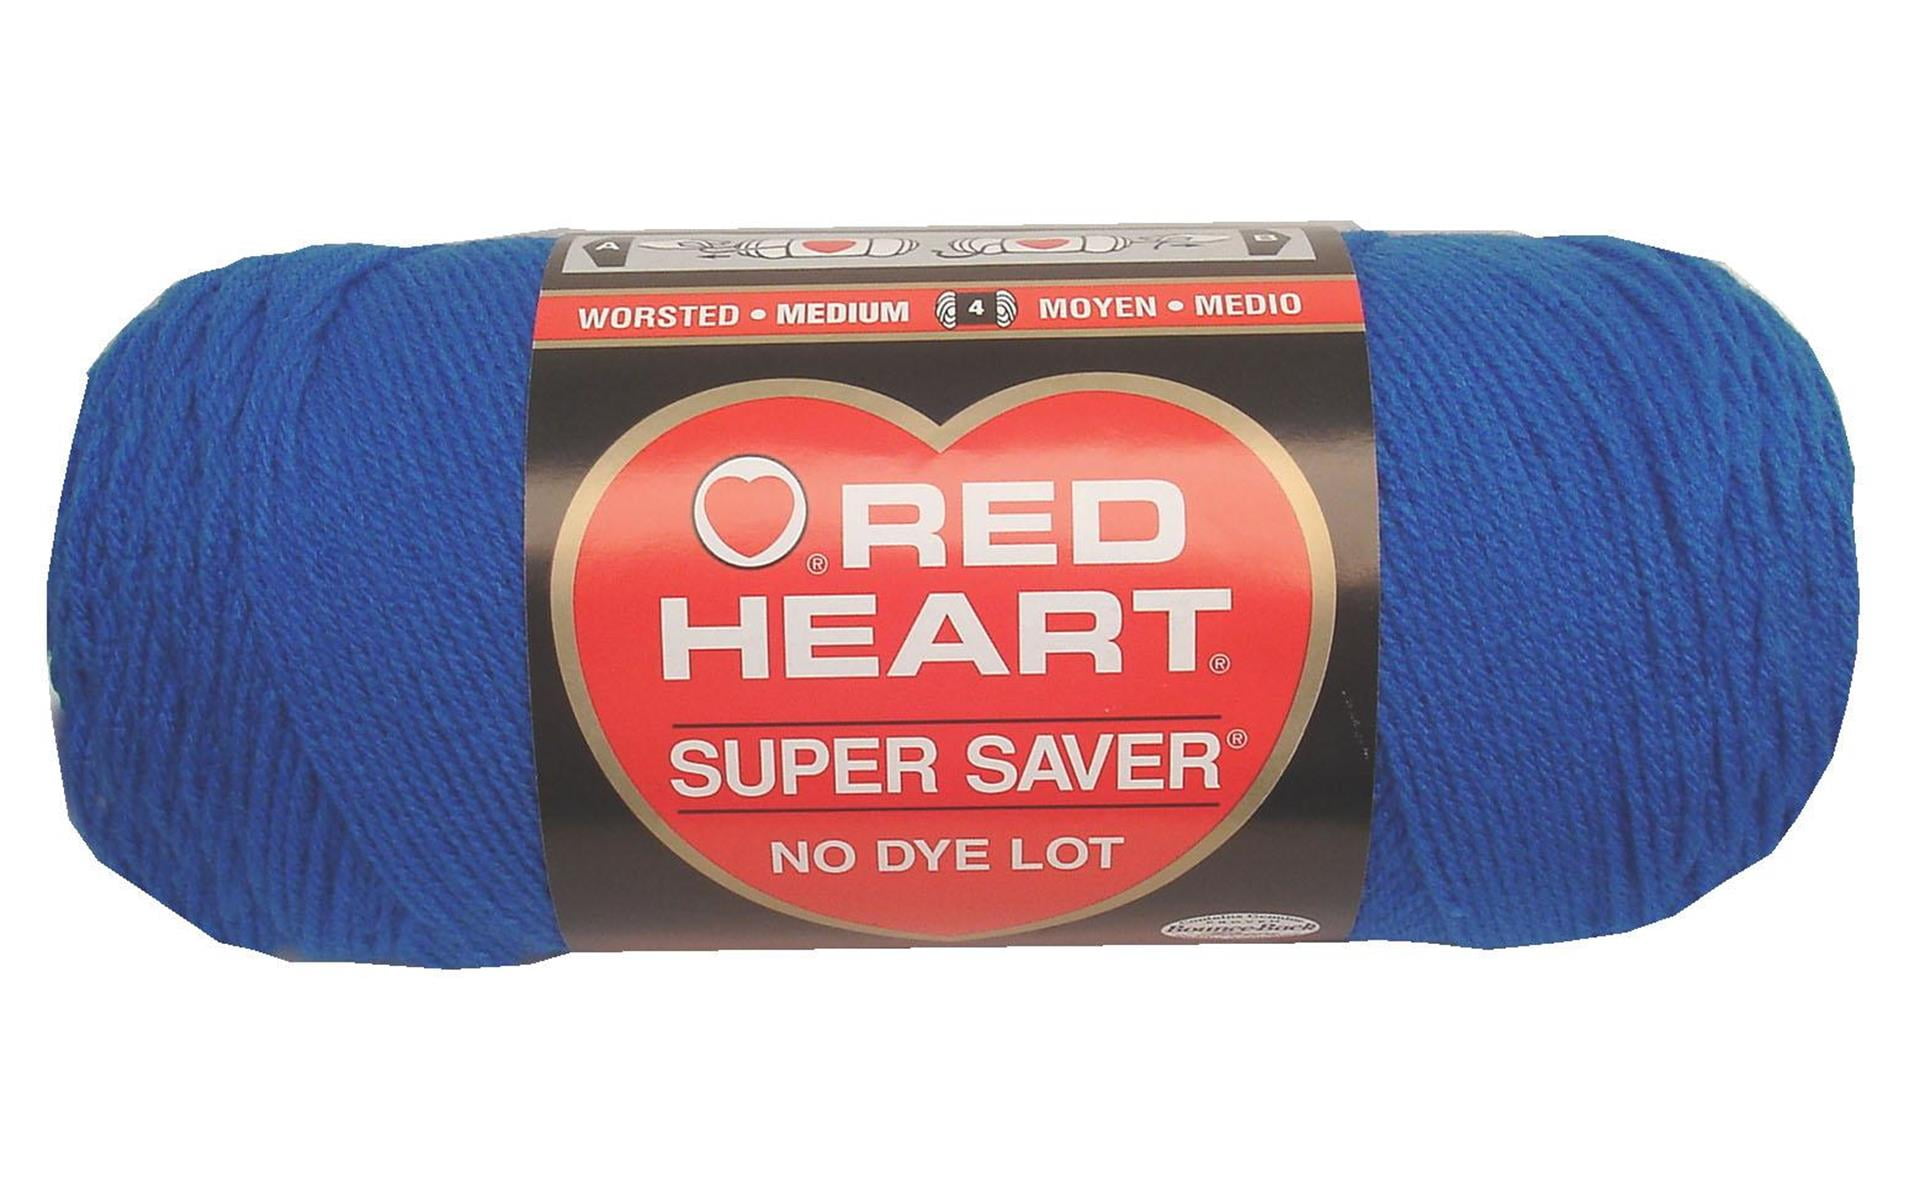 Red Heart Soft Yarn Bulk Buy (3 Pack) Royal Blue E728-9851